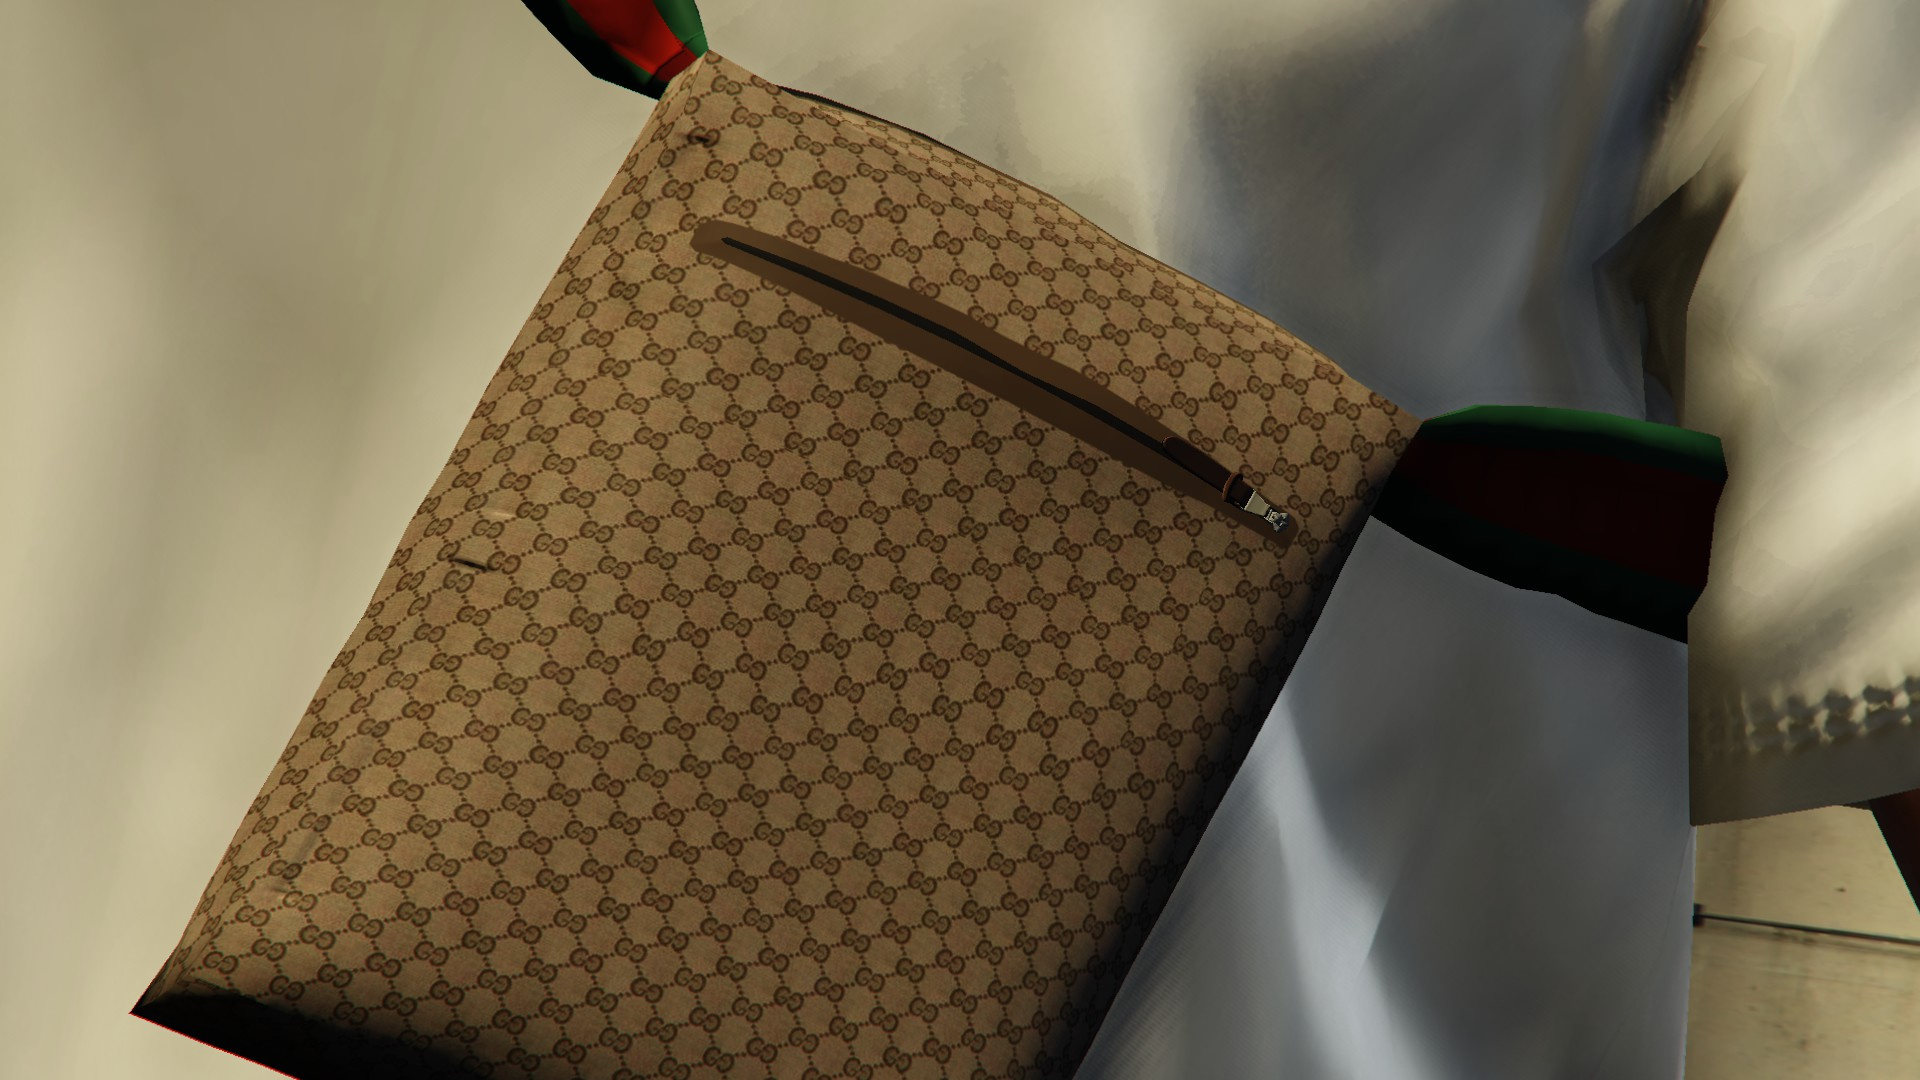 Gucci man bag (MP/SP) 